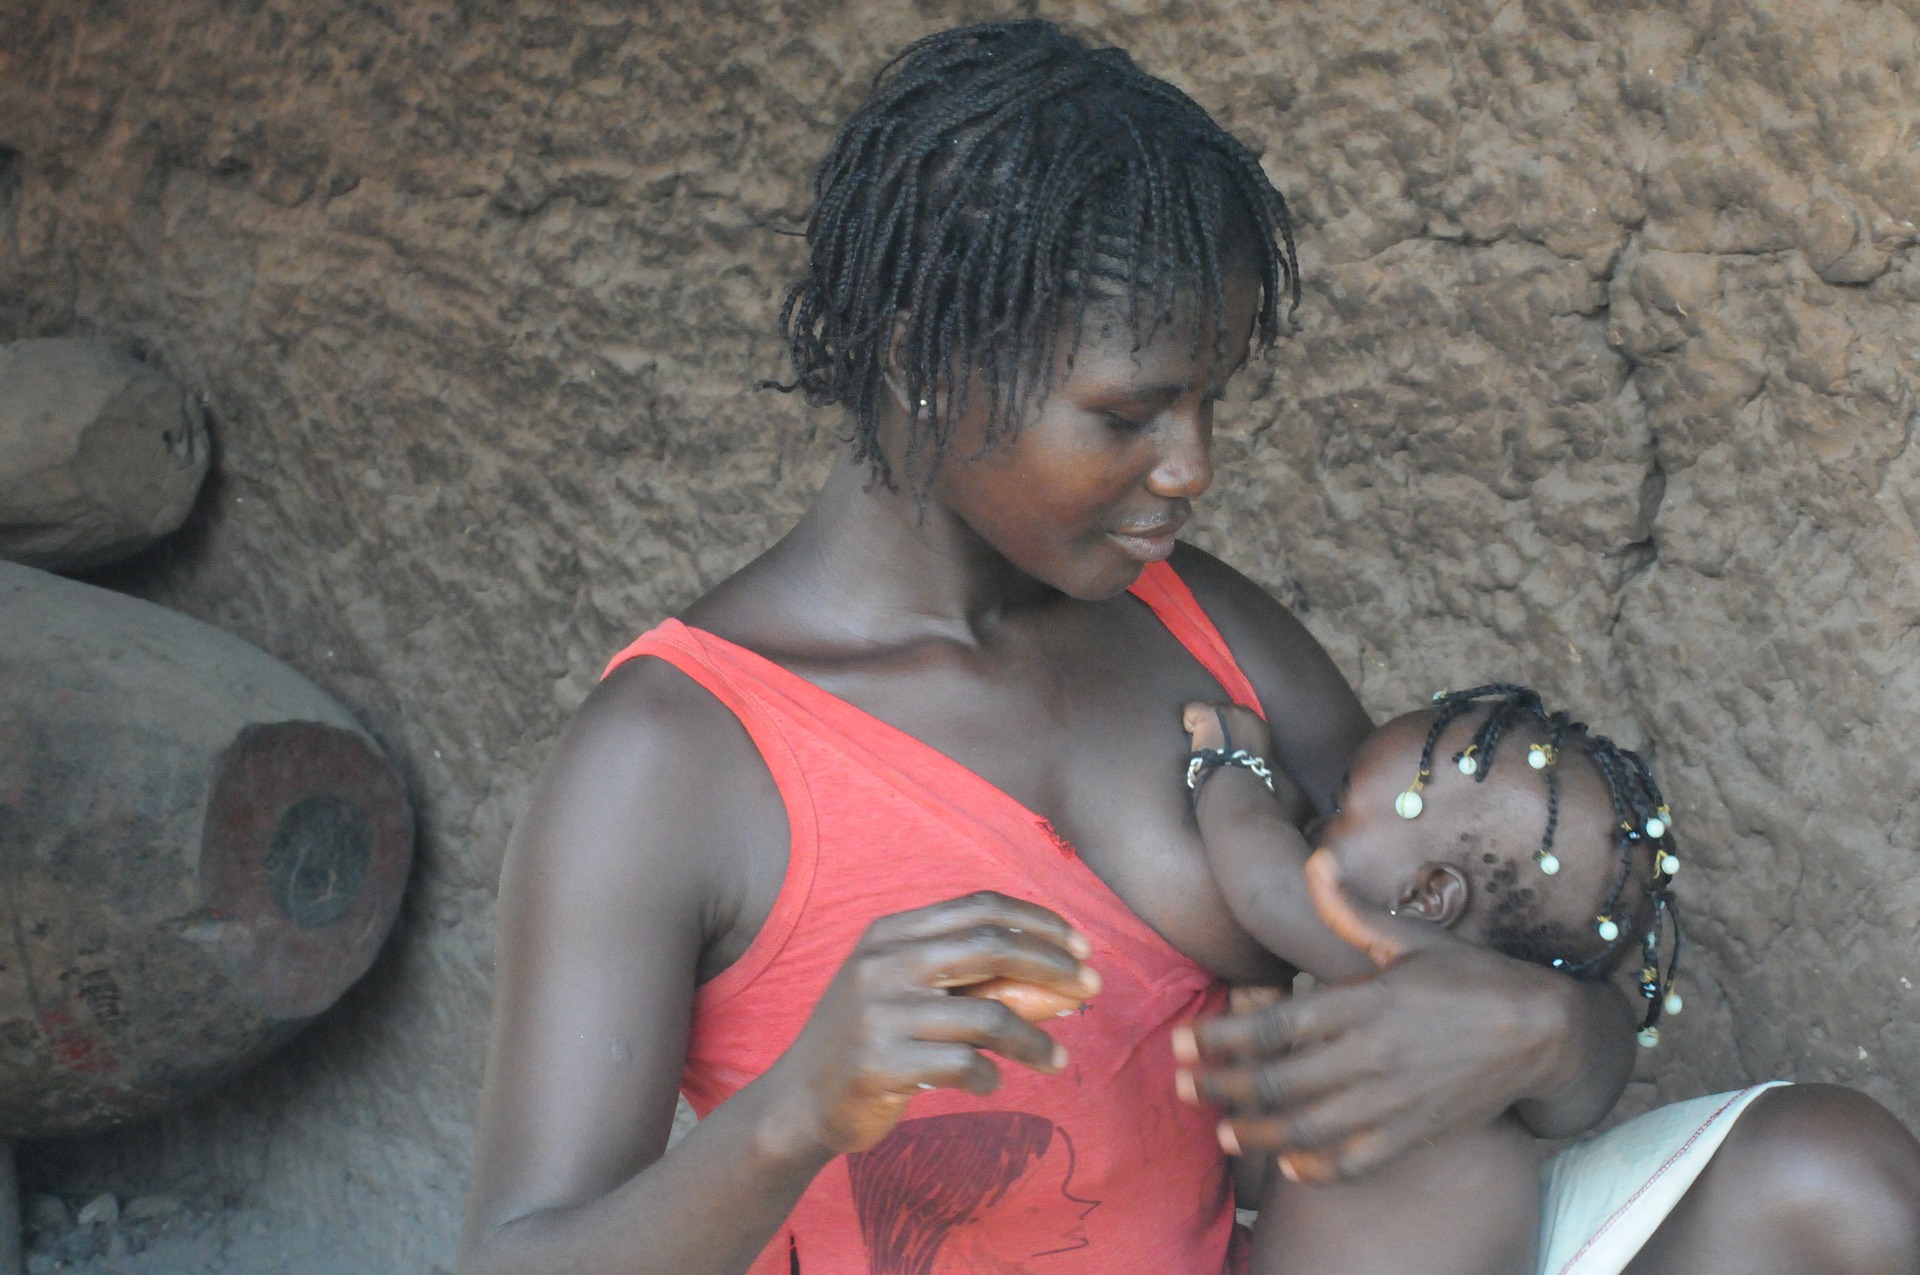 Les bienfaits de l’allaitement exclusif au sein pour les nourrissons